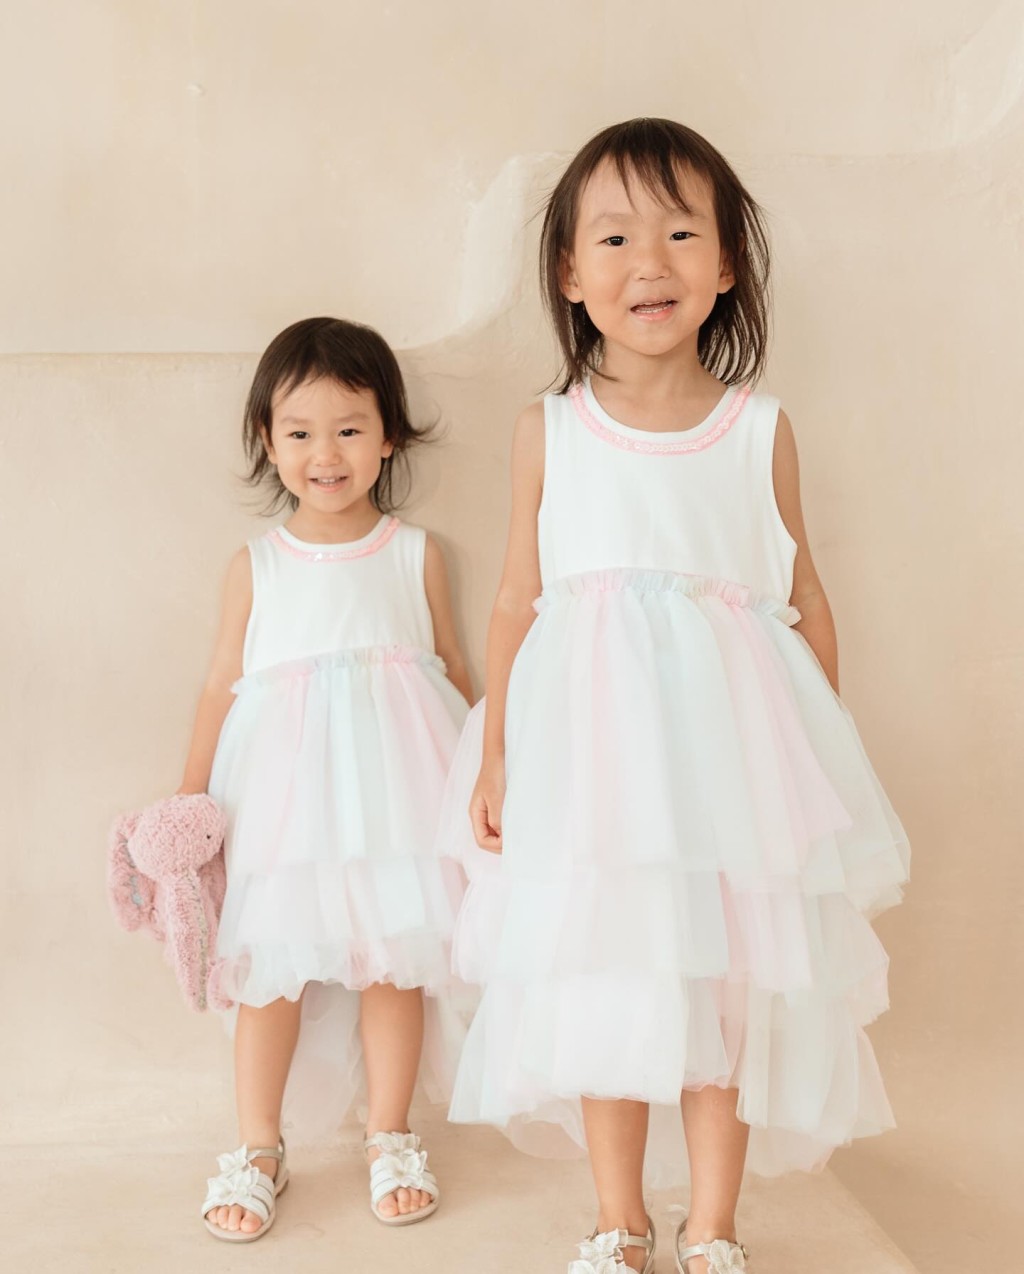 李雪莹的两个囡囡穿上姊妹装。